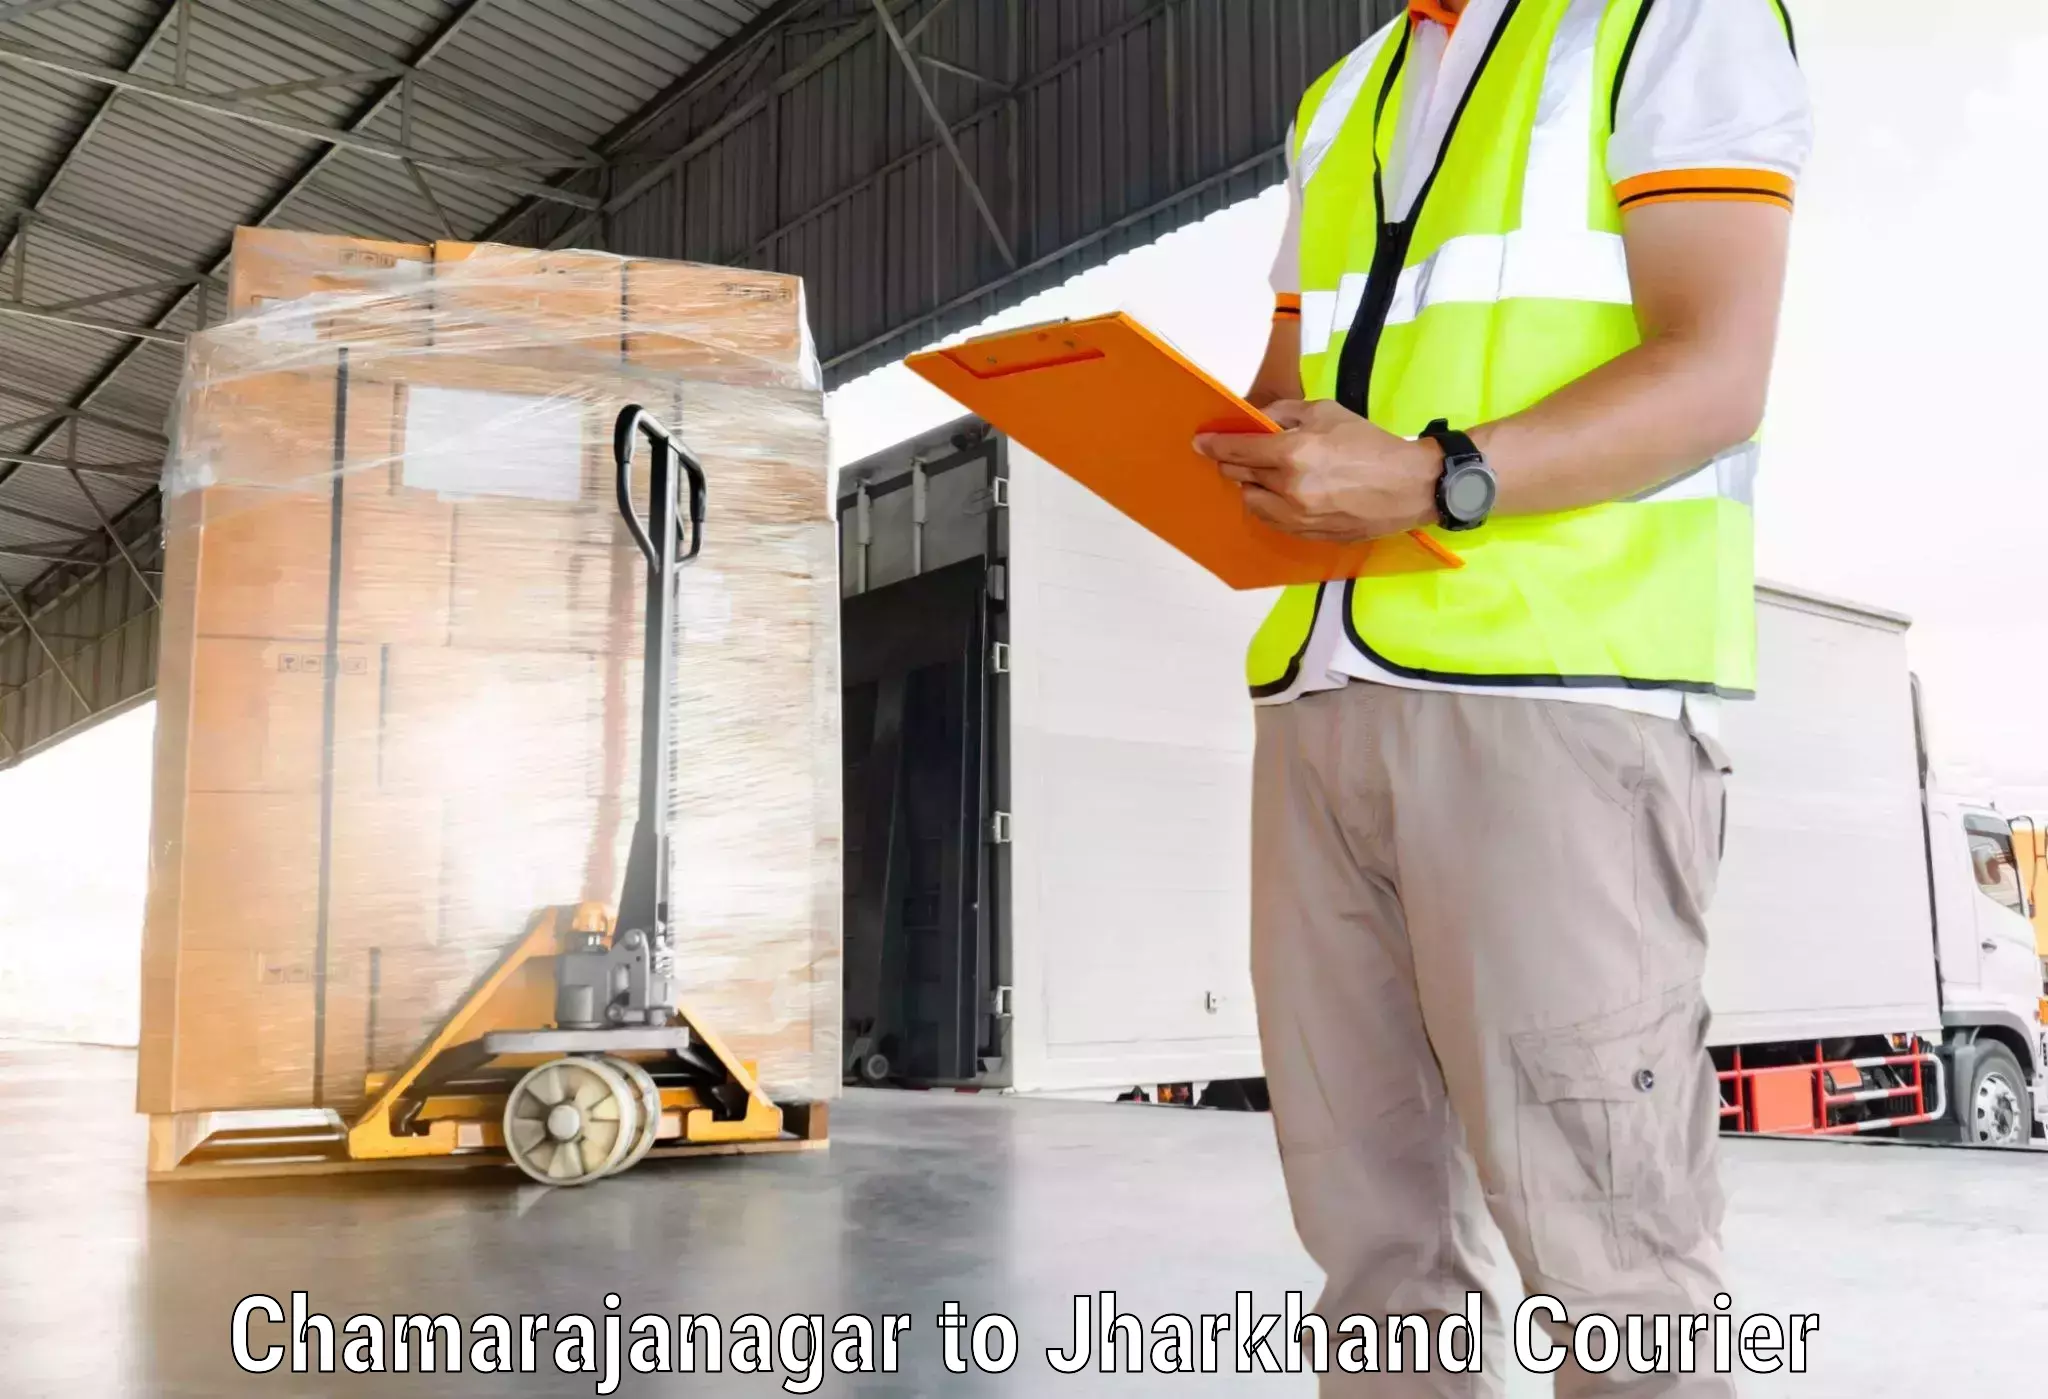 Express courier capabilities Chamarajanagar to Godabar Chatra